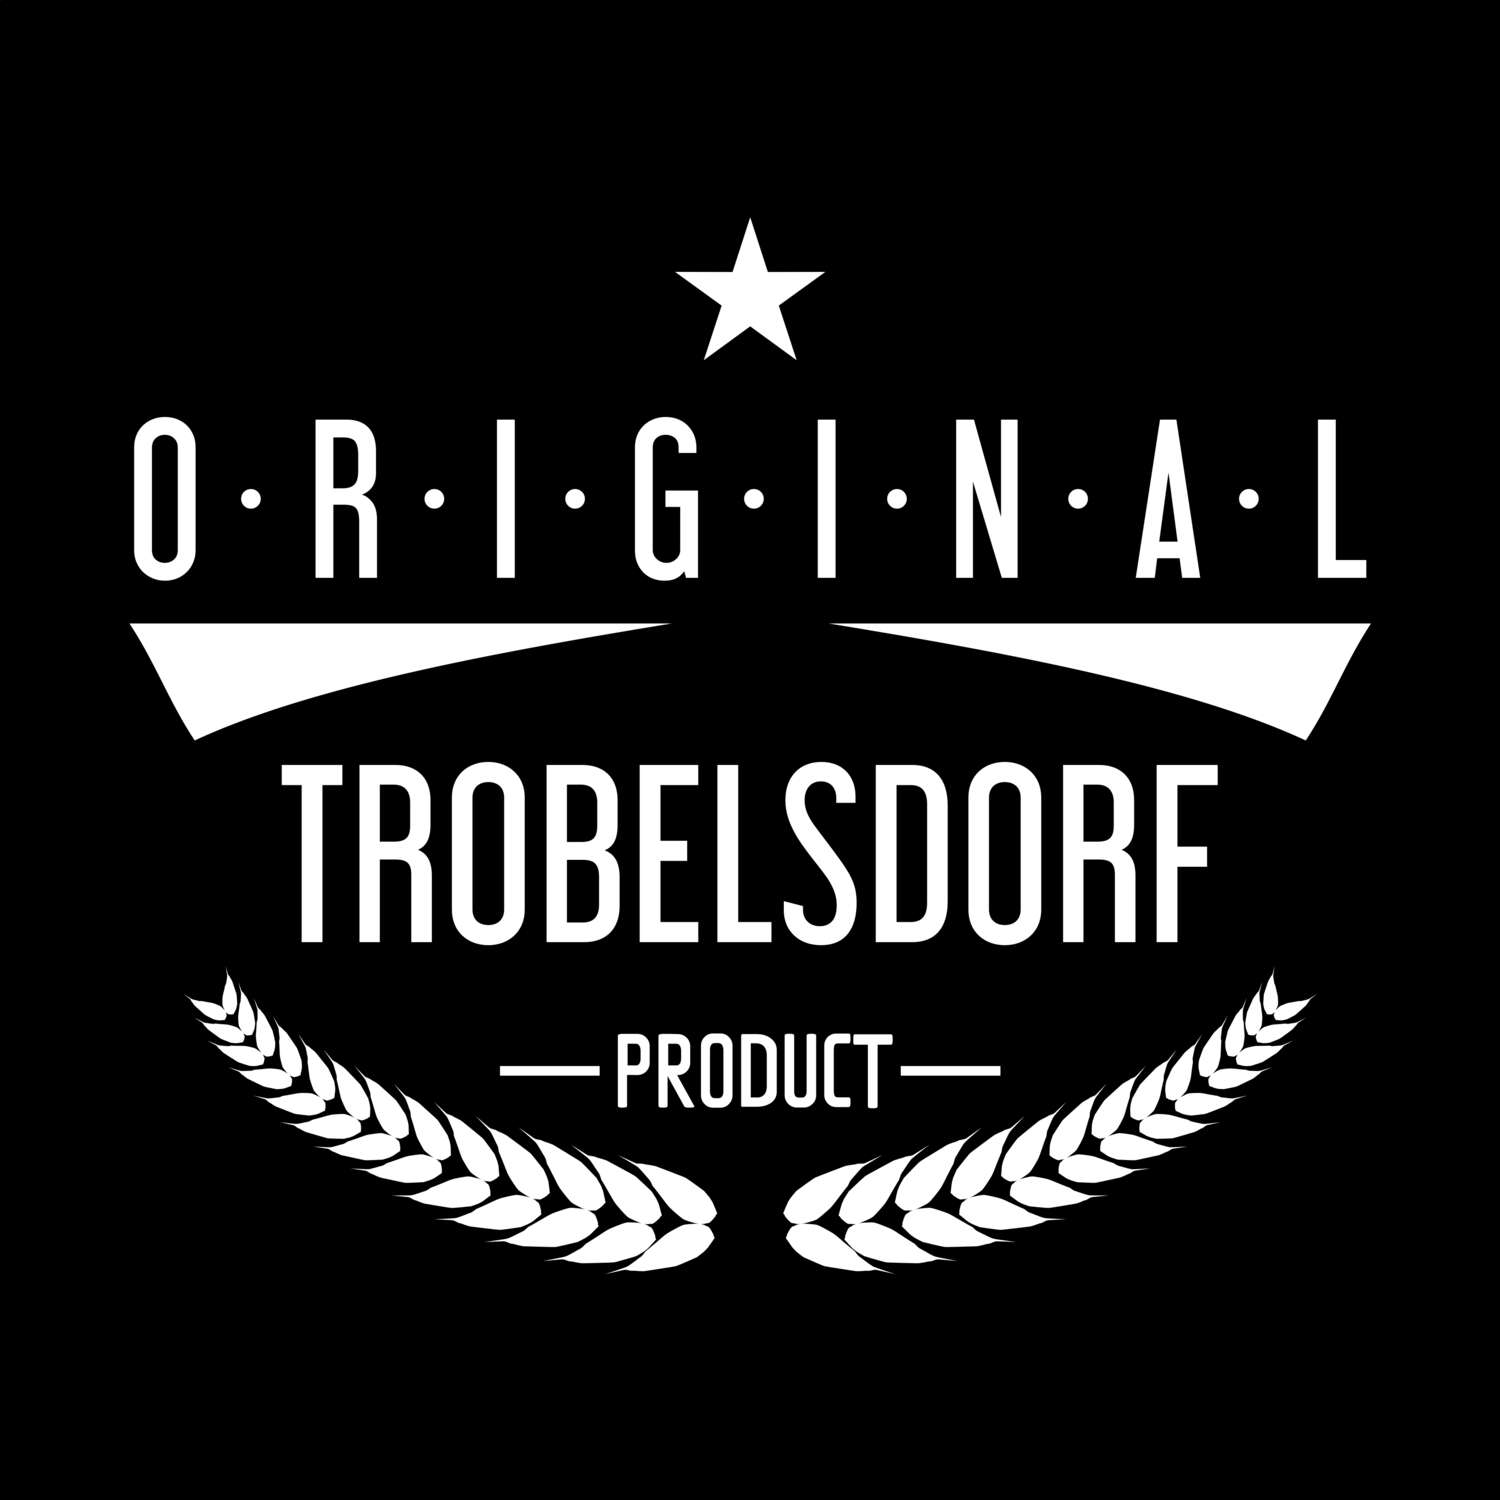 Trobelsdorf T-Shirt »Original Product«